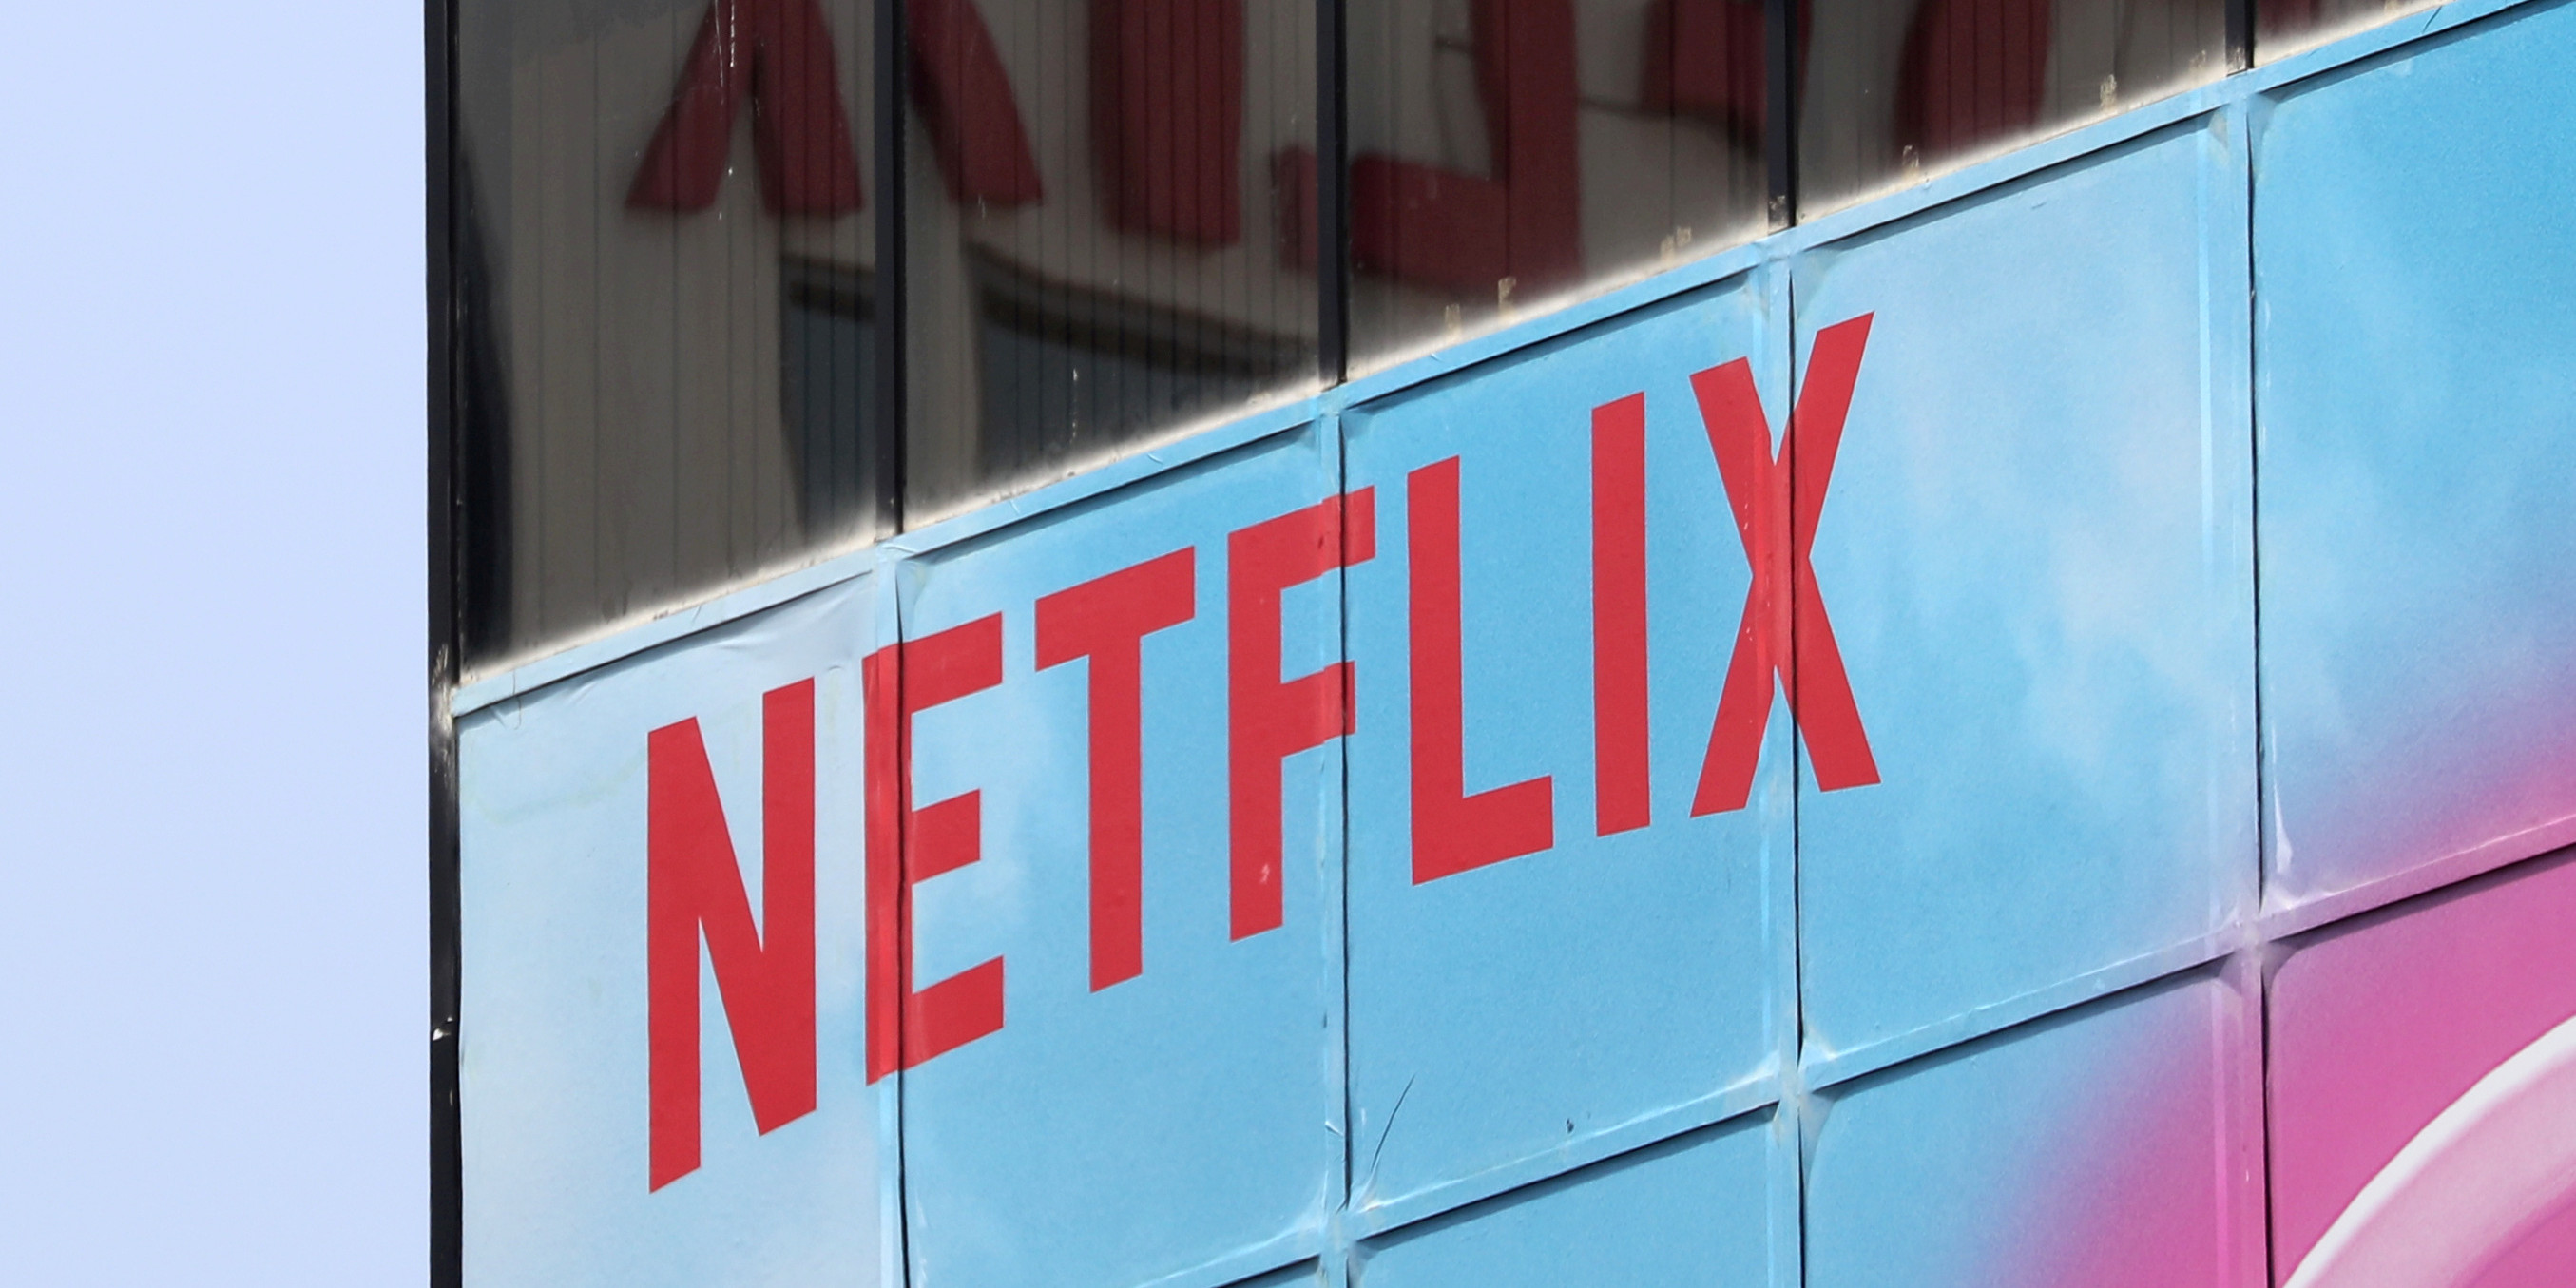 Pour ne pas saturer les réseaux, Netflix réduit les débits en Europe